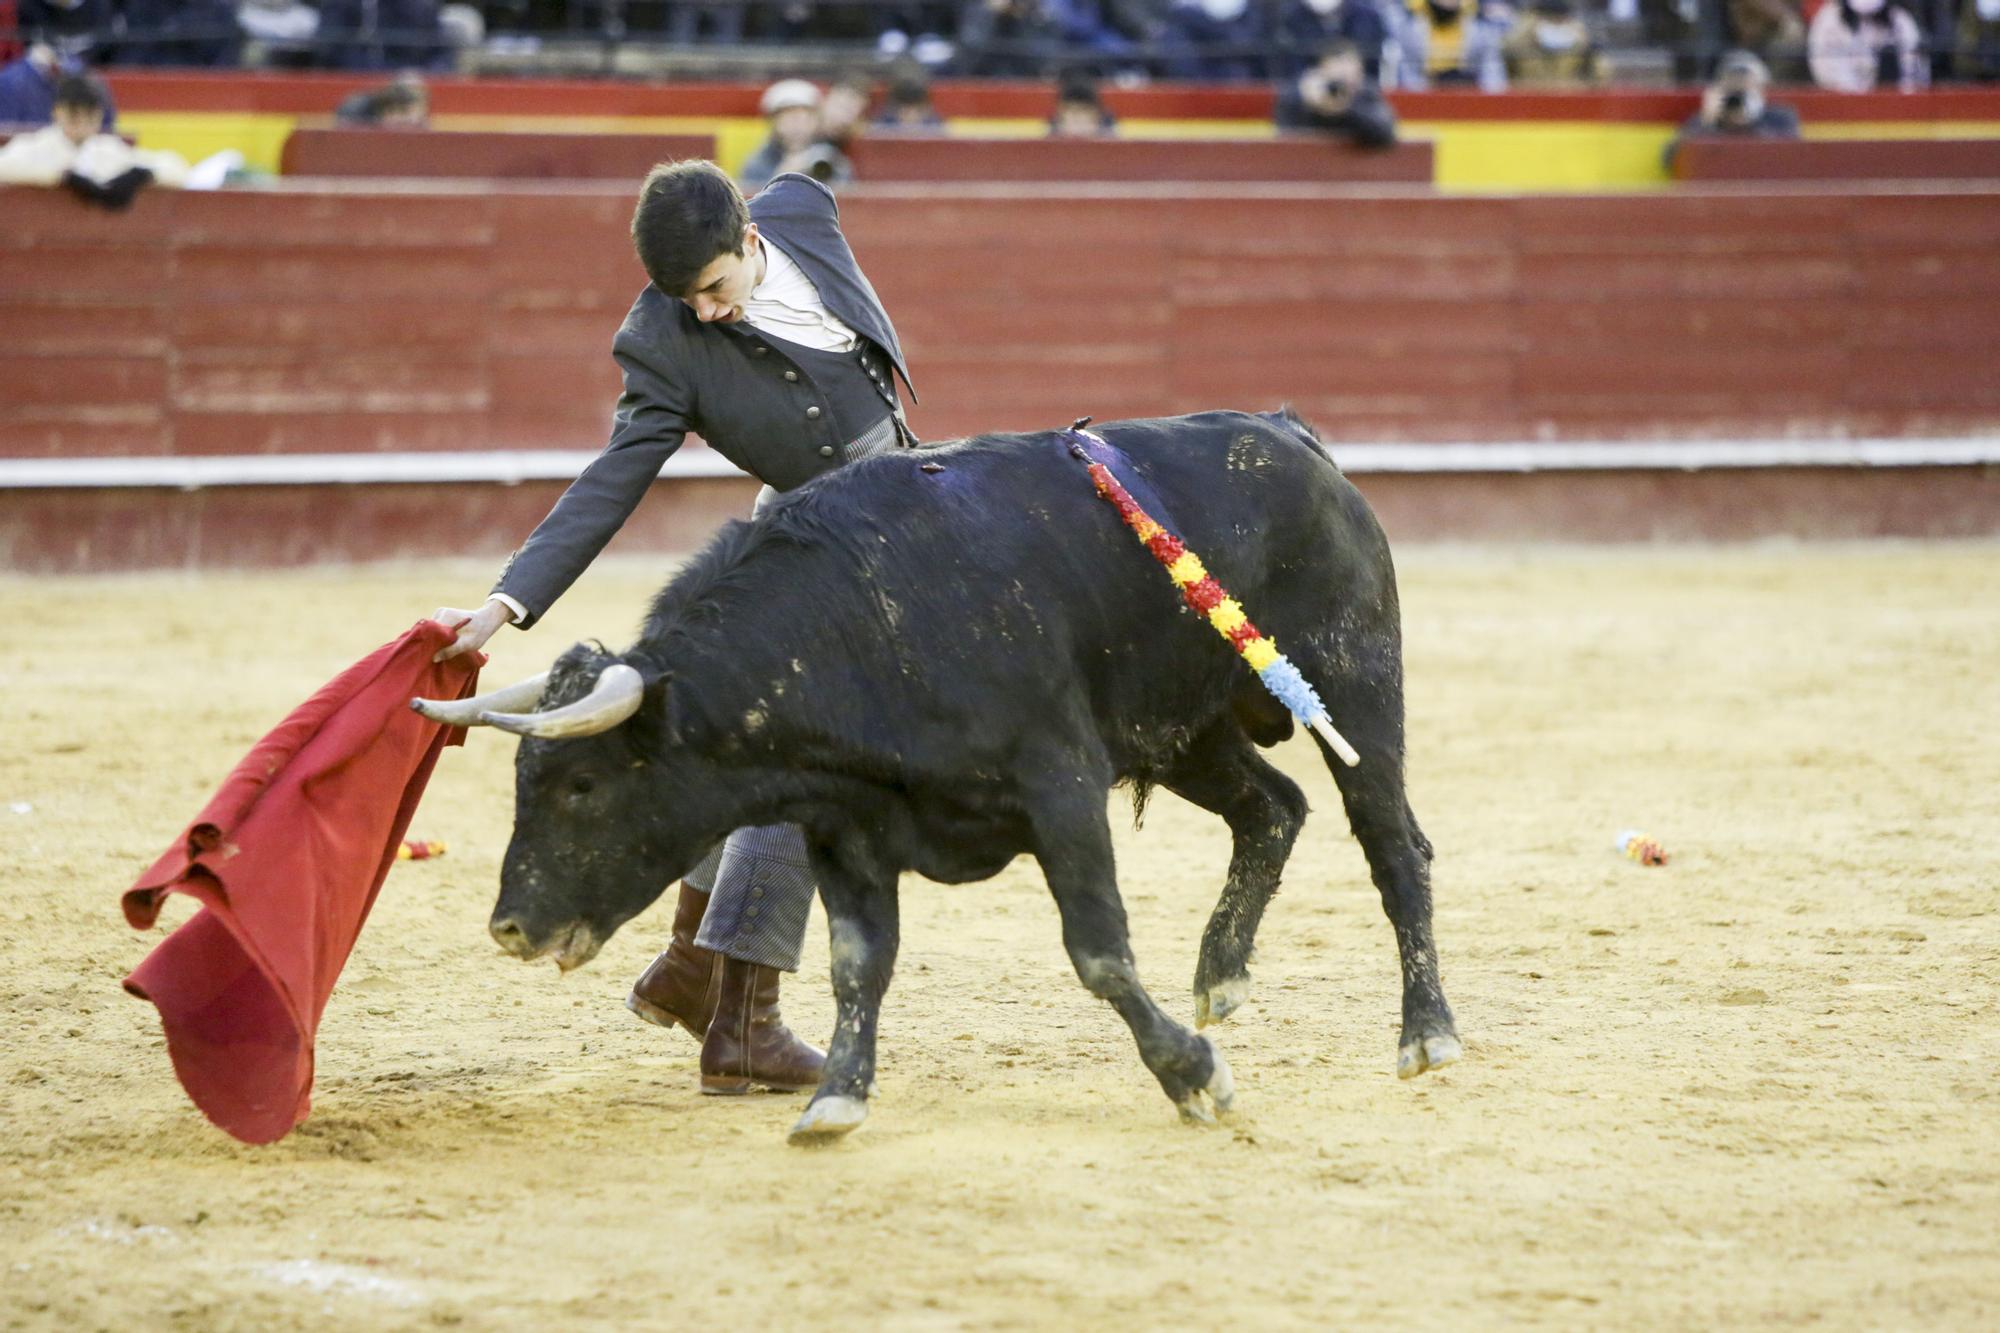 Nek Romero triunfa en el regreso emocionado y memorioso de los toros a València